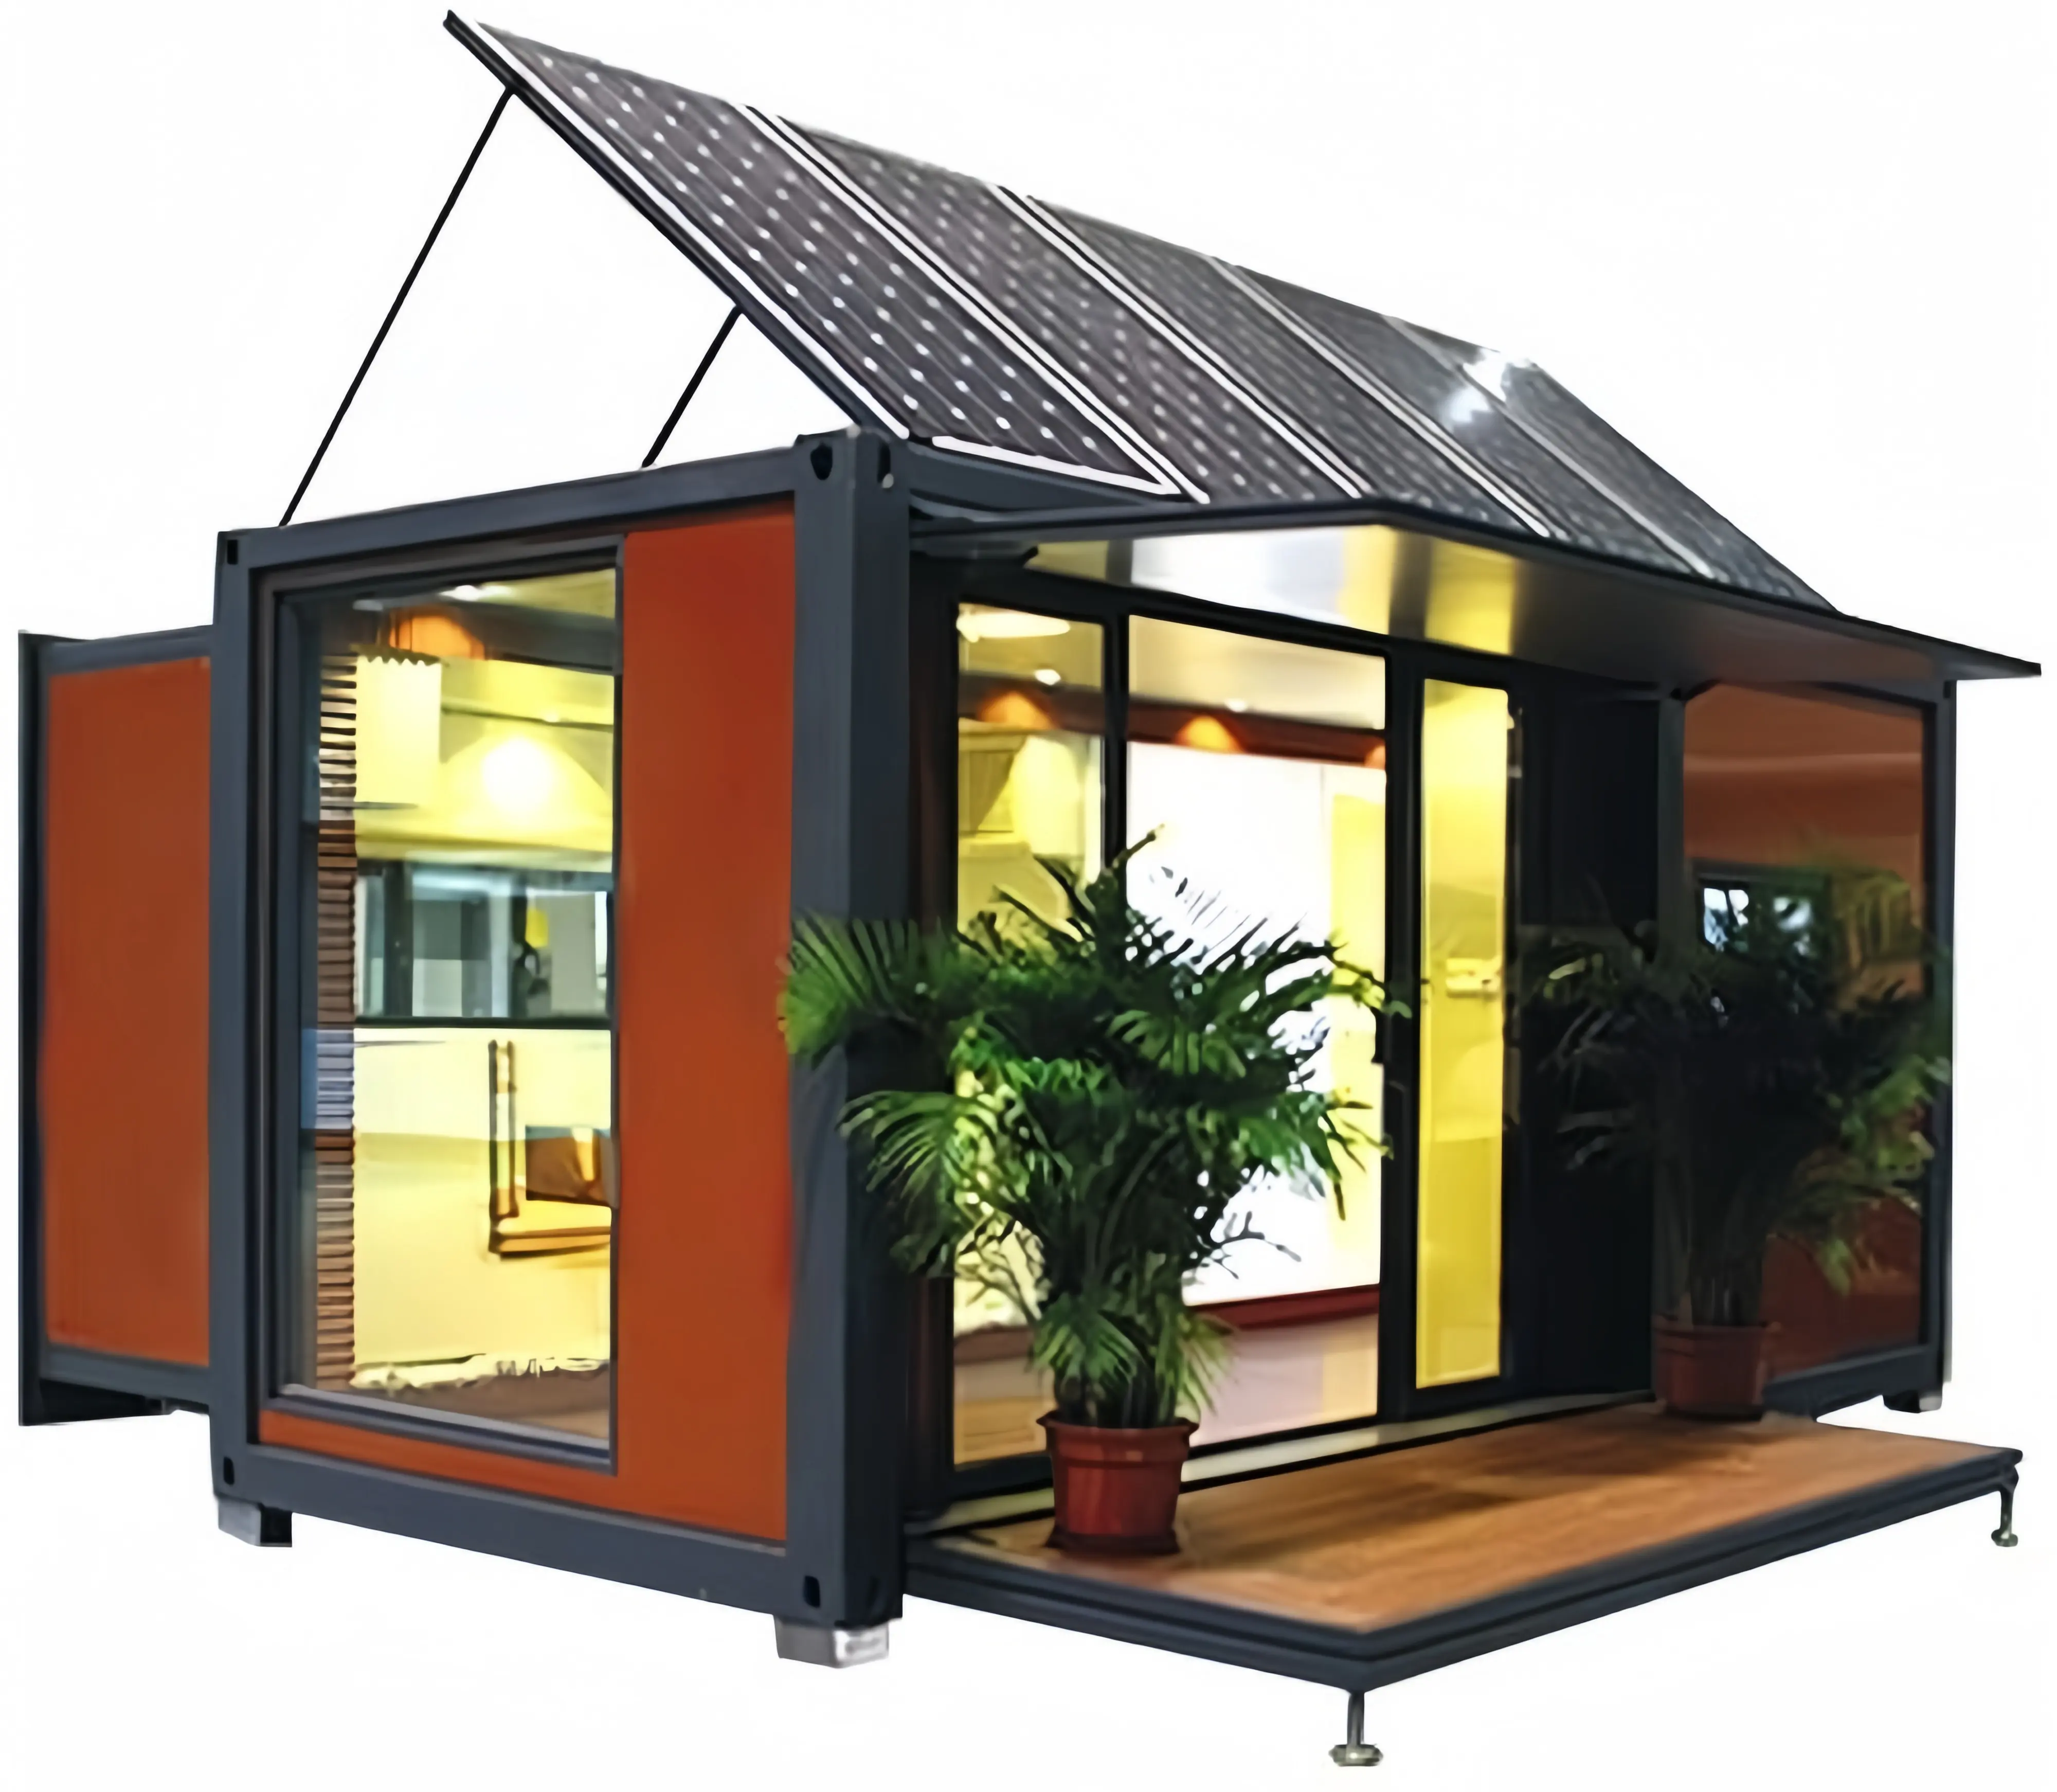 20 피트 고급 조립식 컨테이너 하우스 태양 광 모바일 모듈러 스틸 구조 마이크로 홈 조립식 생활